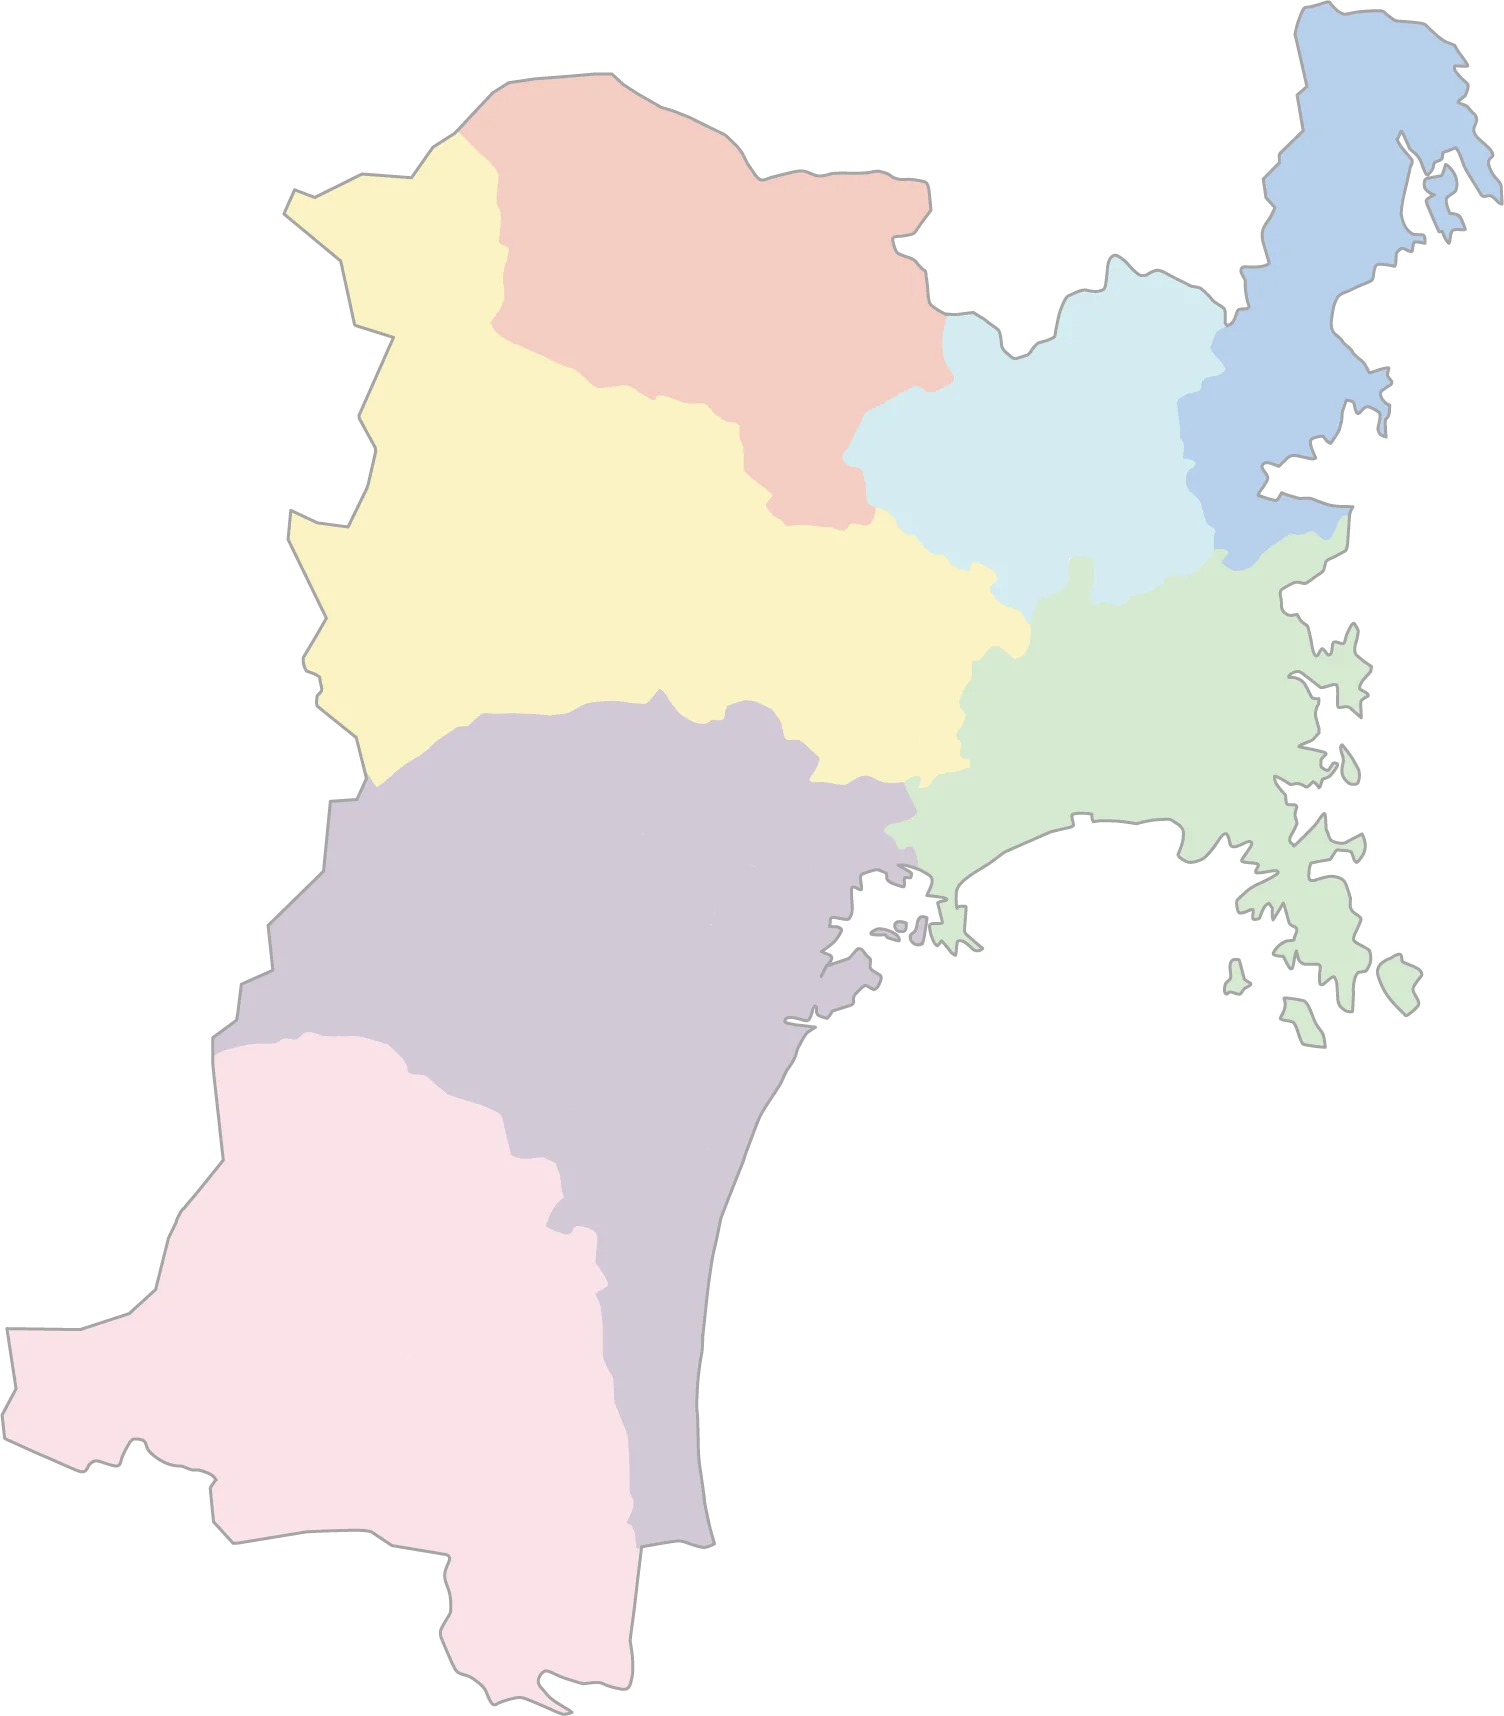 宮城県地図